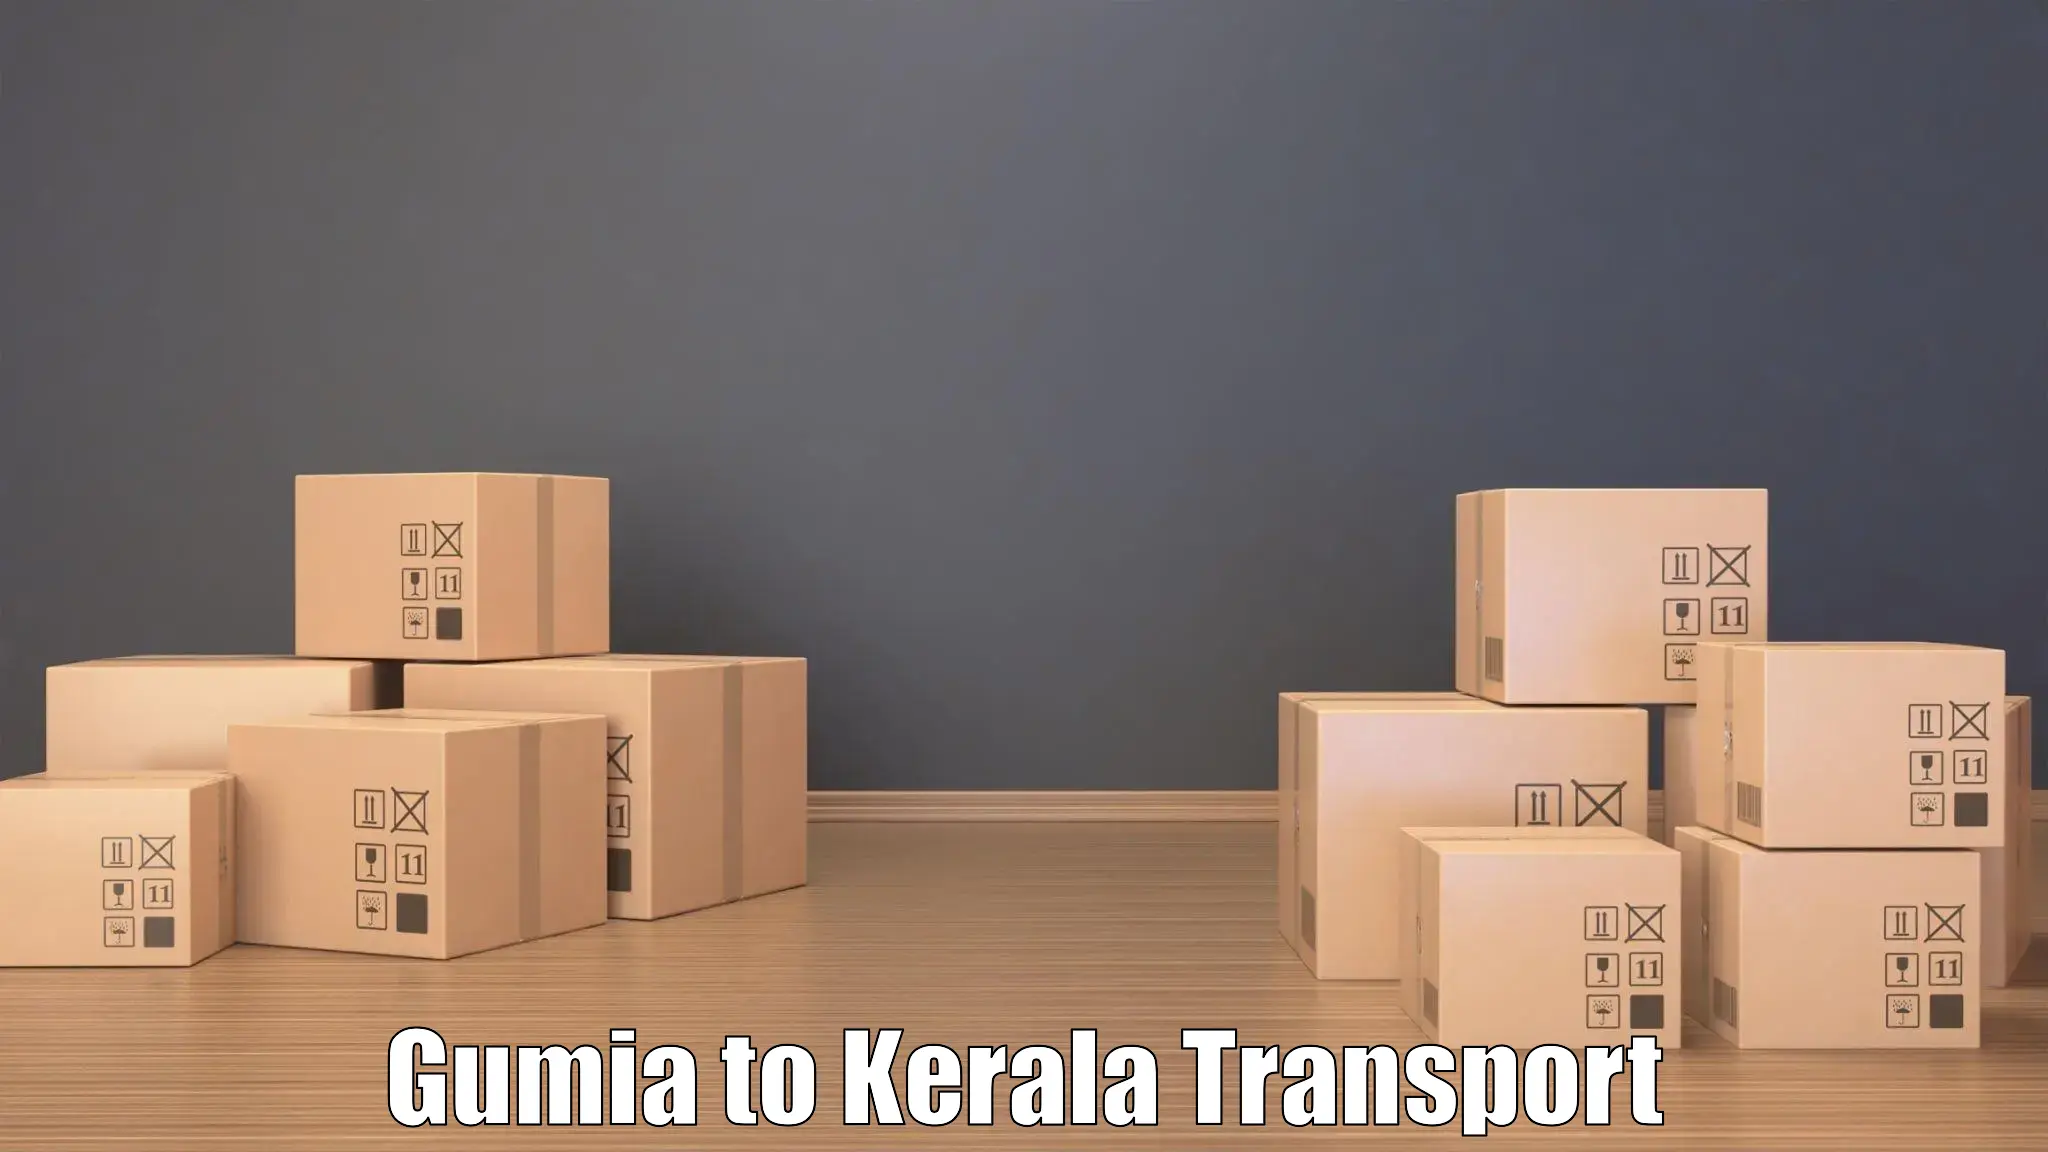 Shipping partner Gumia to Chungatra